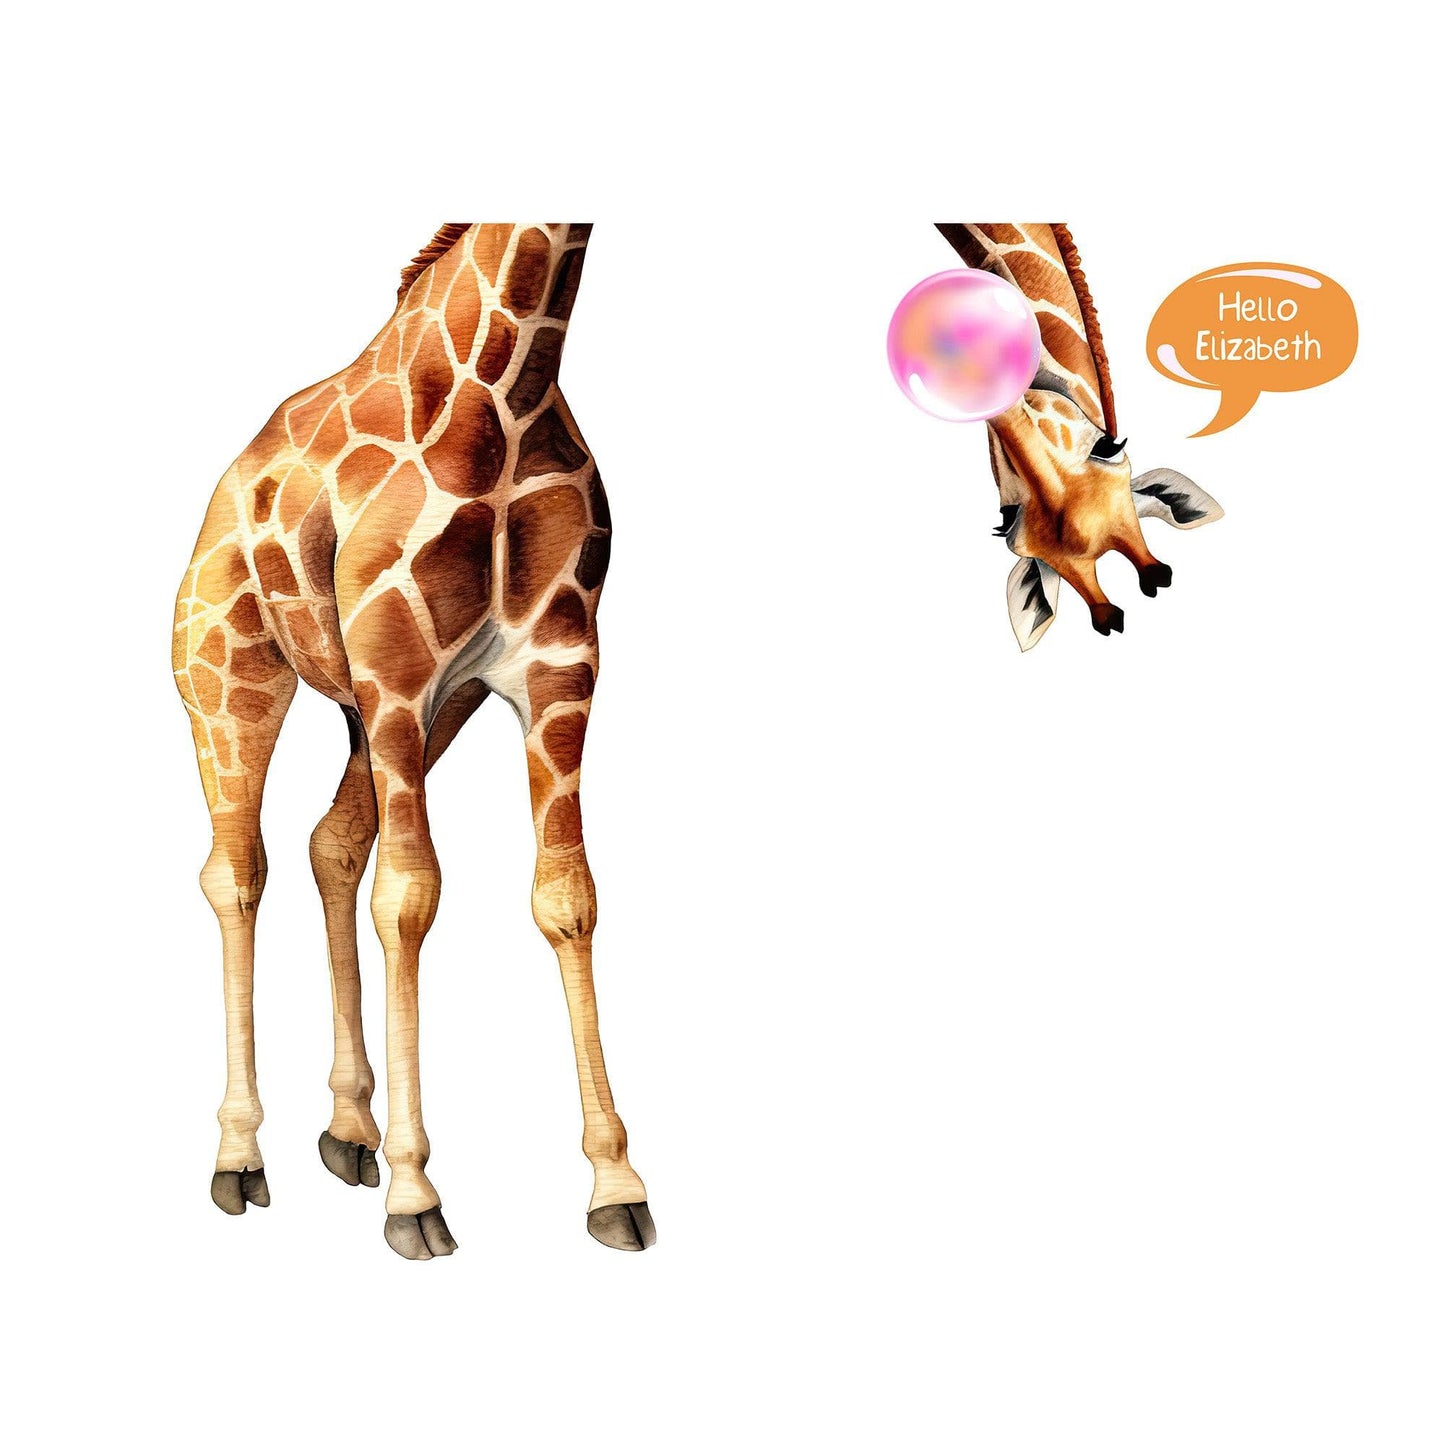 Playful Upside Down Neck Giraffe Wall Decal with Custom Speech Bubble.  #6632